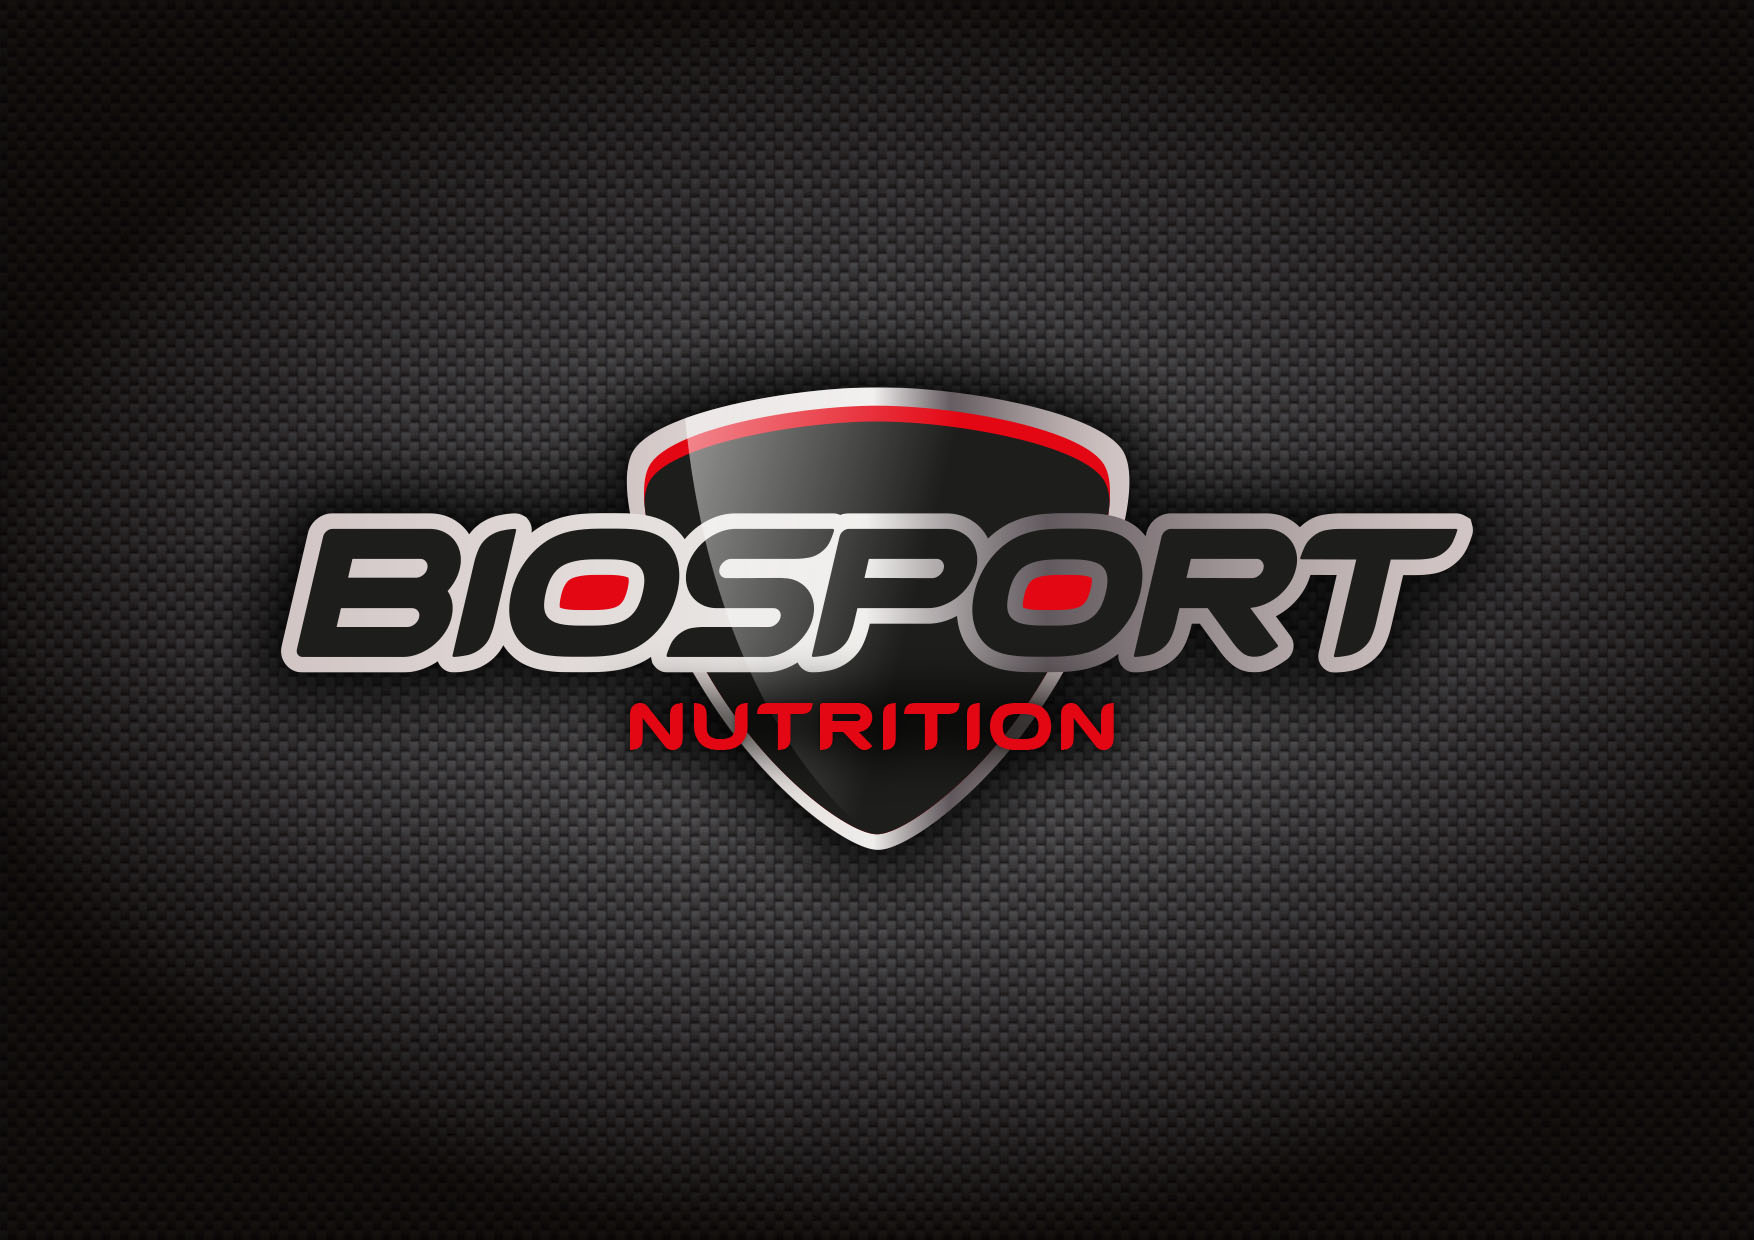 Diseño de branding y packaging Biosport Nutrition